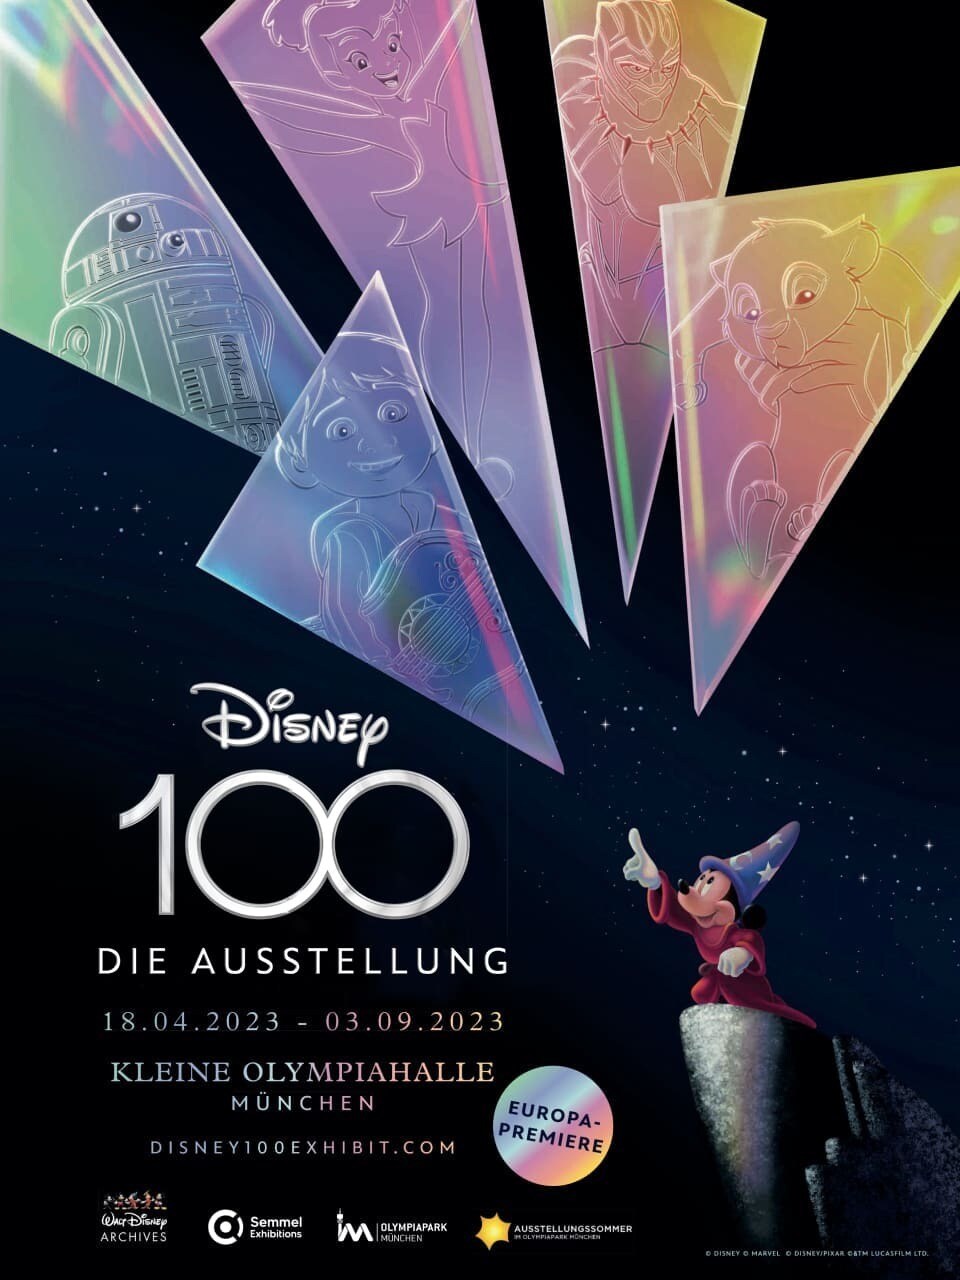 Disney100: Die Ausstellung